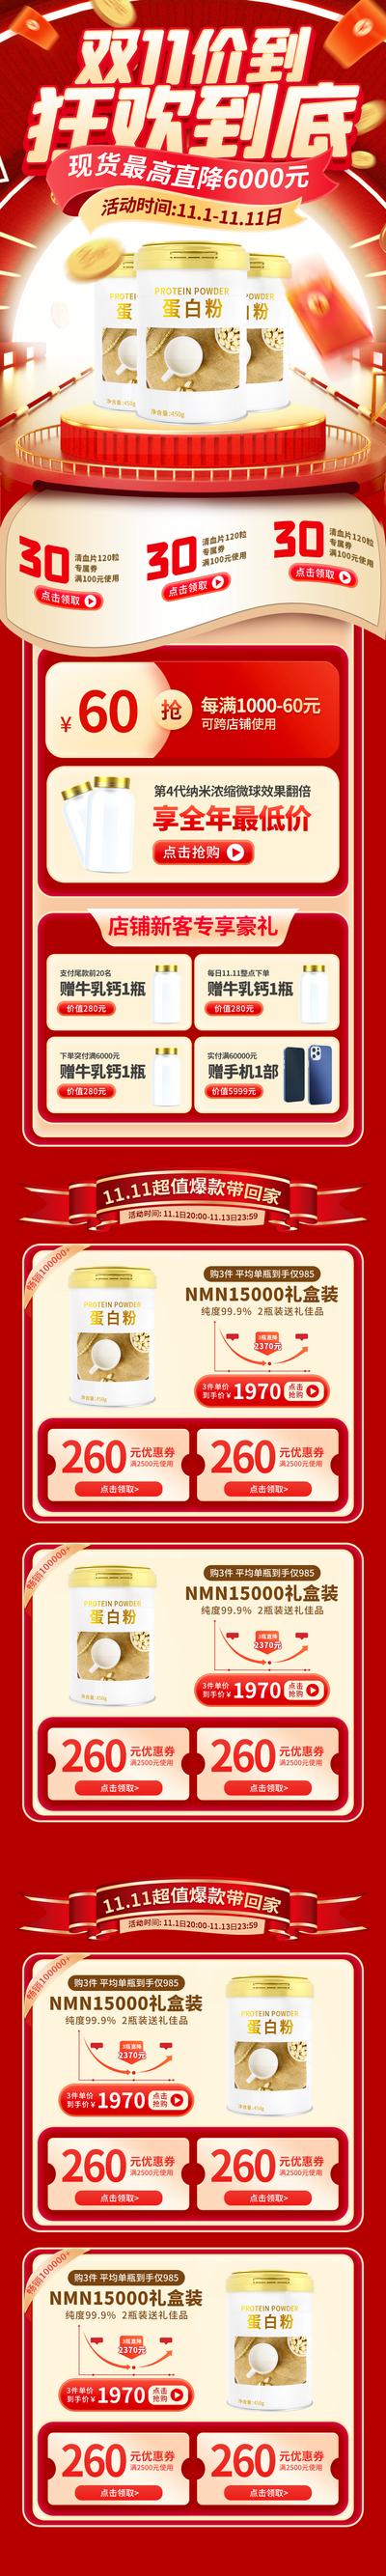 【南门网】广告 海报 电商 双十一 双11 长图 主画面 促销 专题 奶粉